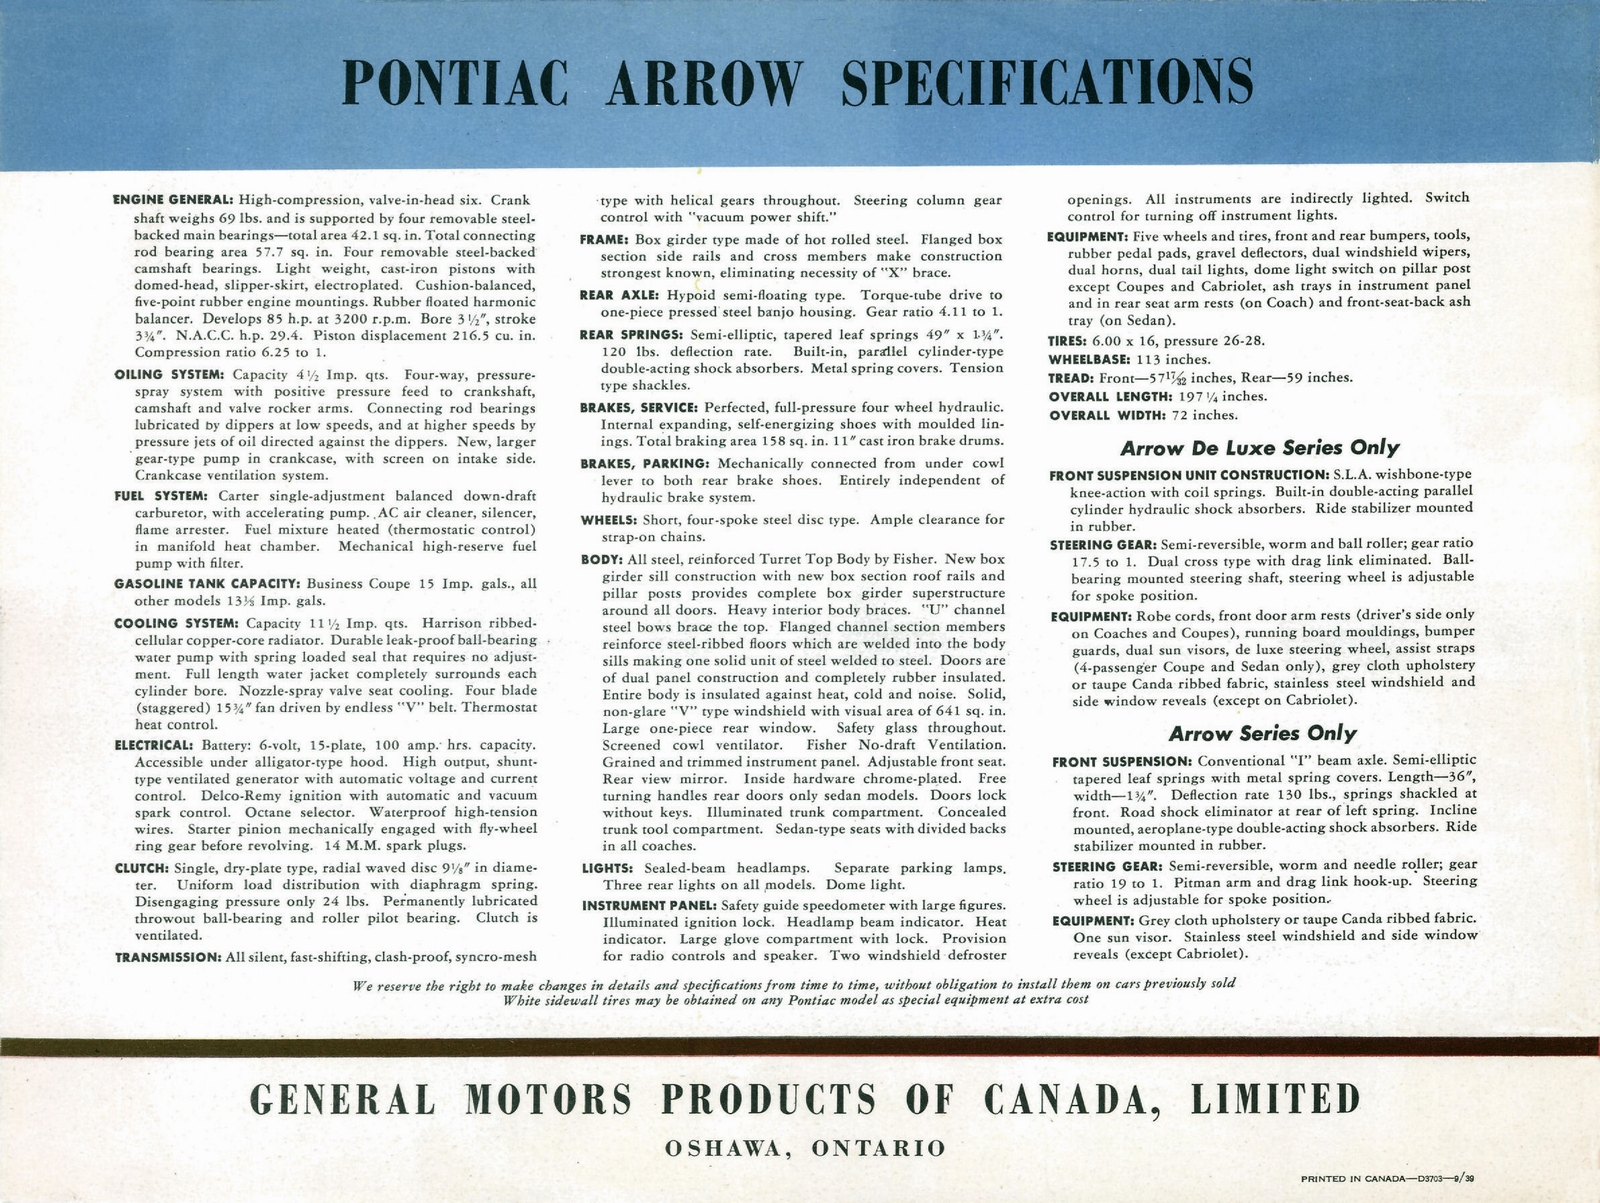 n_1940 Pontiac Arrow Foldout (Cdn)-01c.jpg